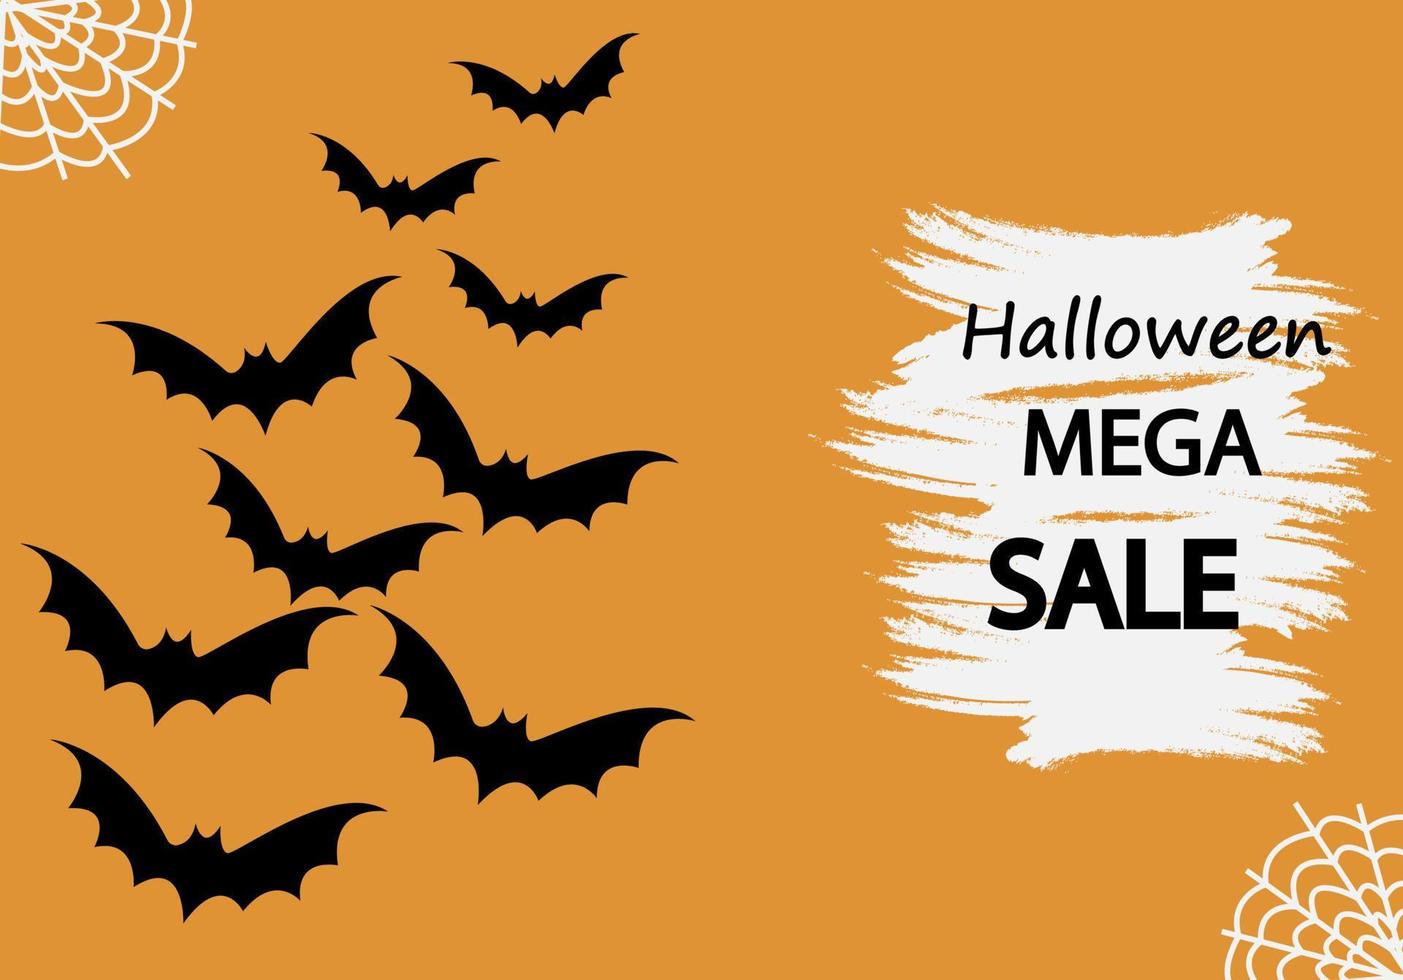 Halloween-Mega-Verkauf auf orangefarbenem Hintergrund mit Fledermäusen. Halloween-Verkaufsvorlage Poster oder Banner. Vektor-Illustration vektor